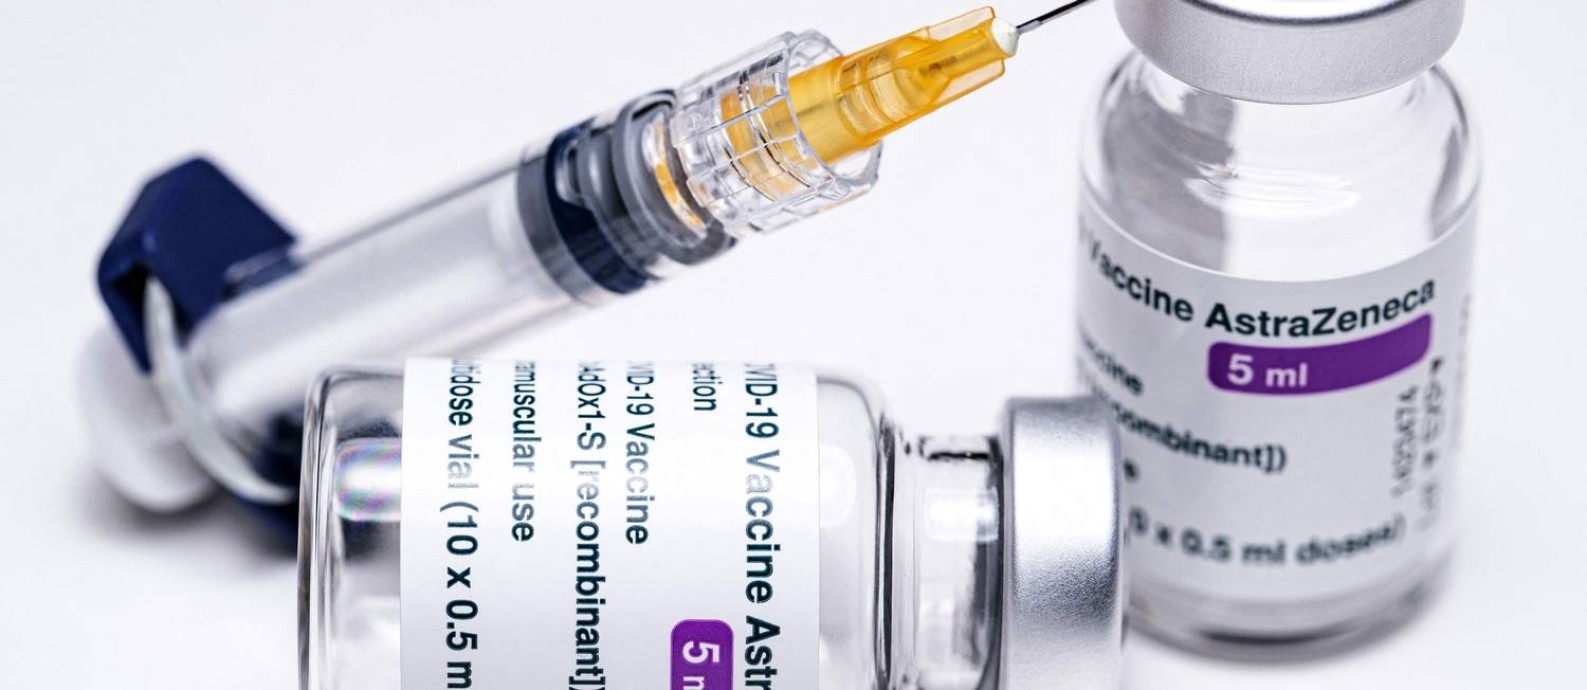 Frascos da vacina da AstraZeneca, desenvolvida em parceria com a Universidade de Oxford: imunizante recebeu registro definitivo no Brasil Foto: JOEL SAGET / AFP